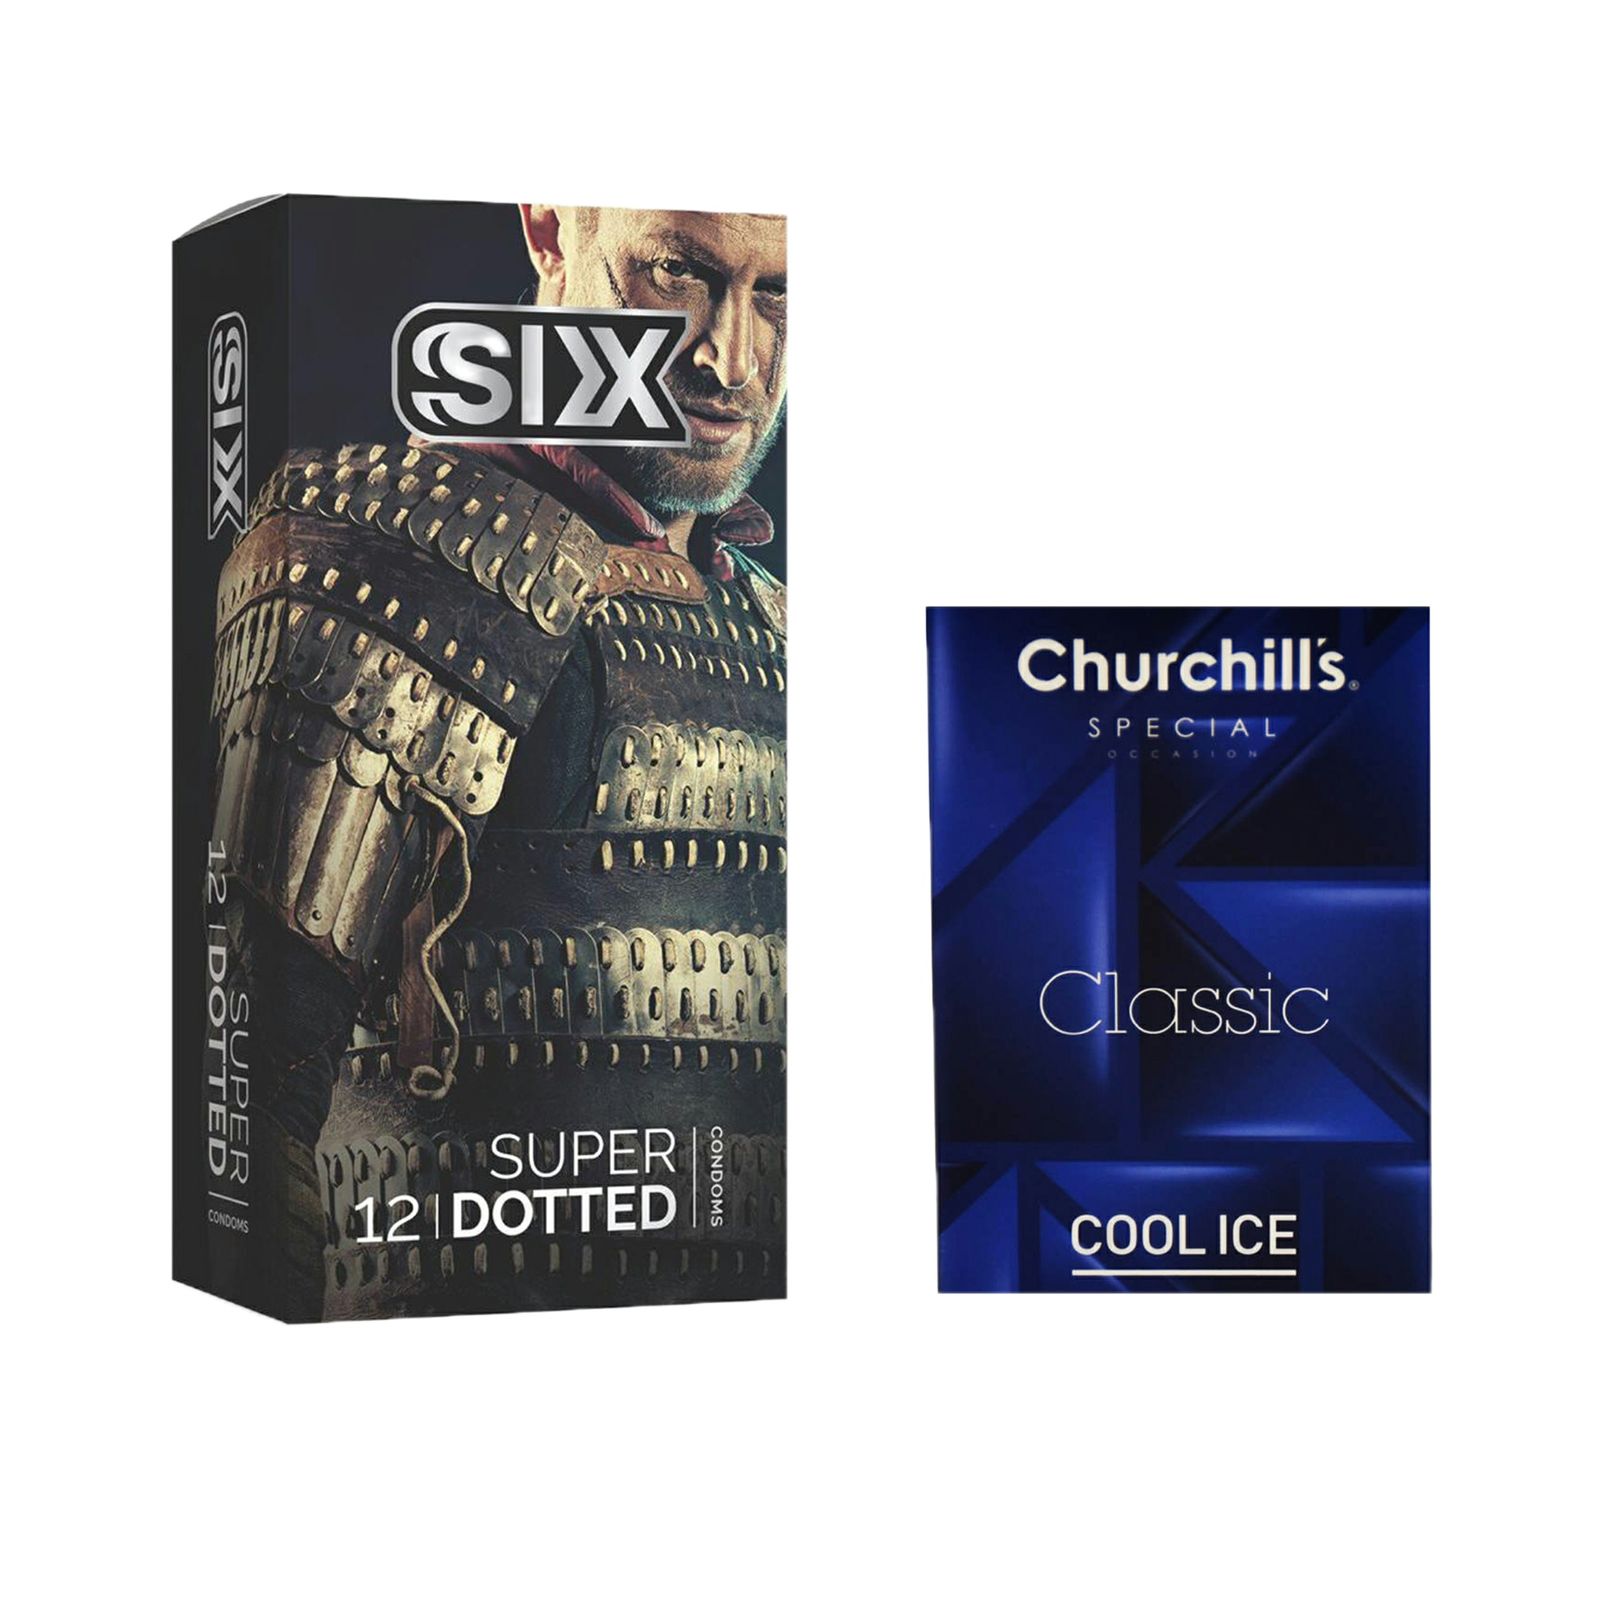 کاندوم سیکس مدل Super Dotted بسته 12 عددی به همراه کاندوم چرچیلز مدل Cool Ice بسته 3 عددی -  - 1